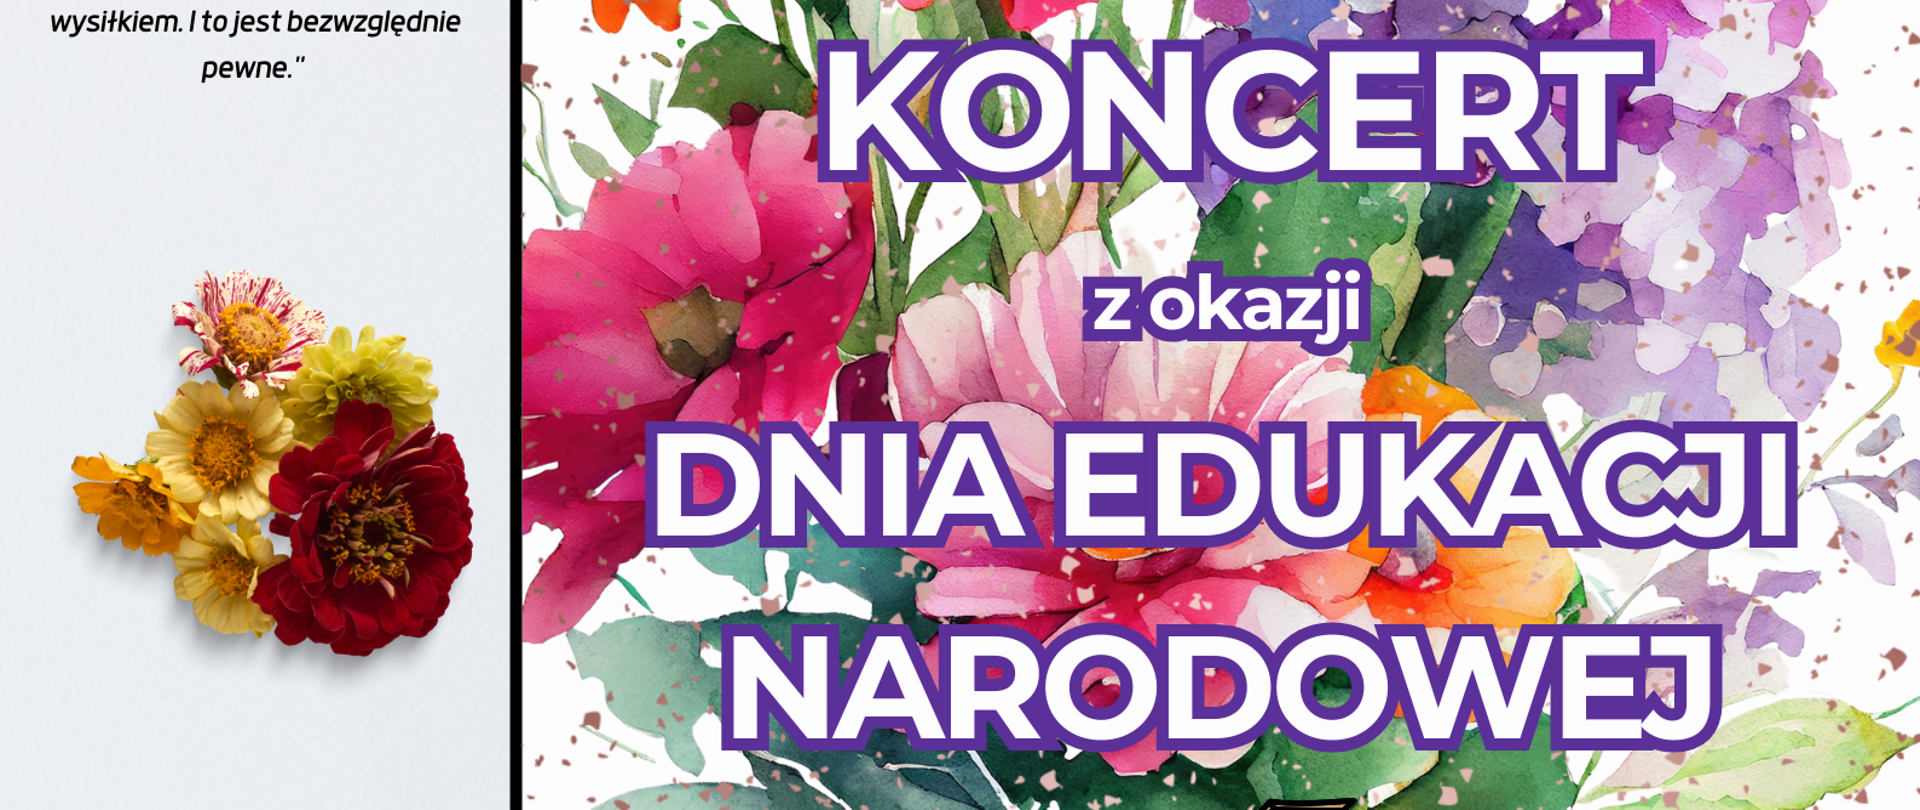 plakat na koncert z okazji Dnia Edukacji narodowej